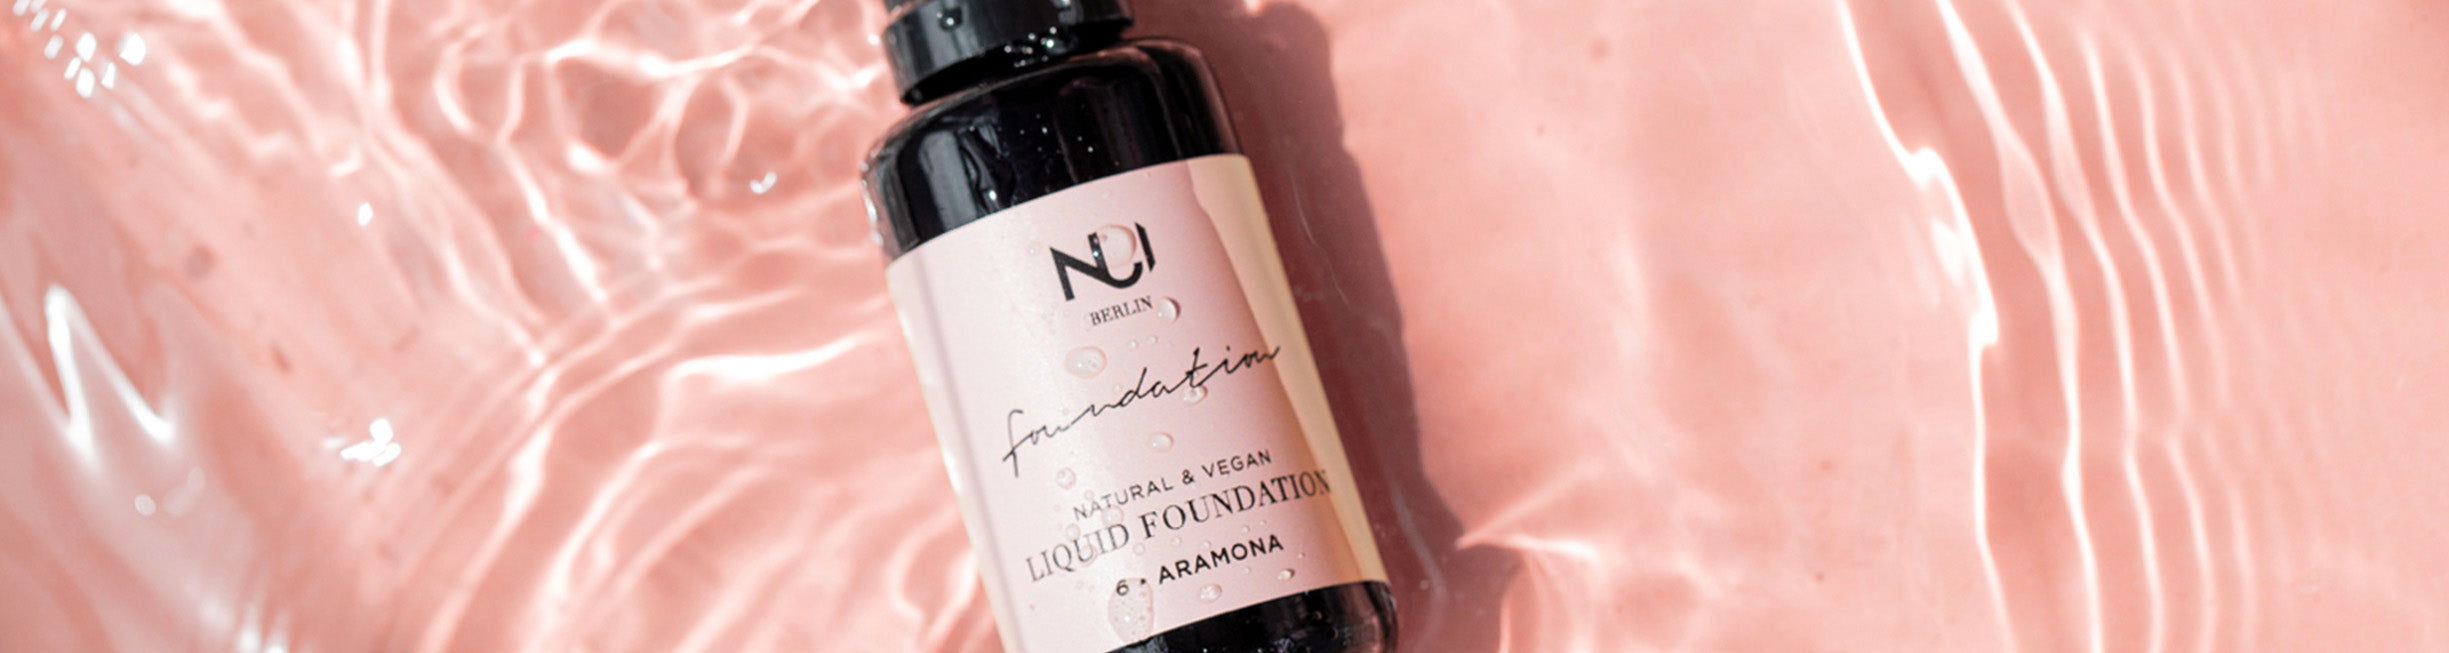 Natural Liquid Foundation